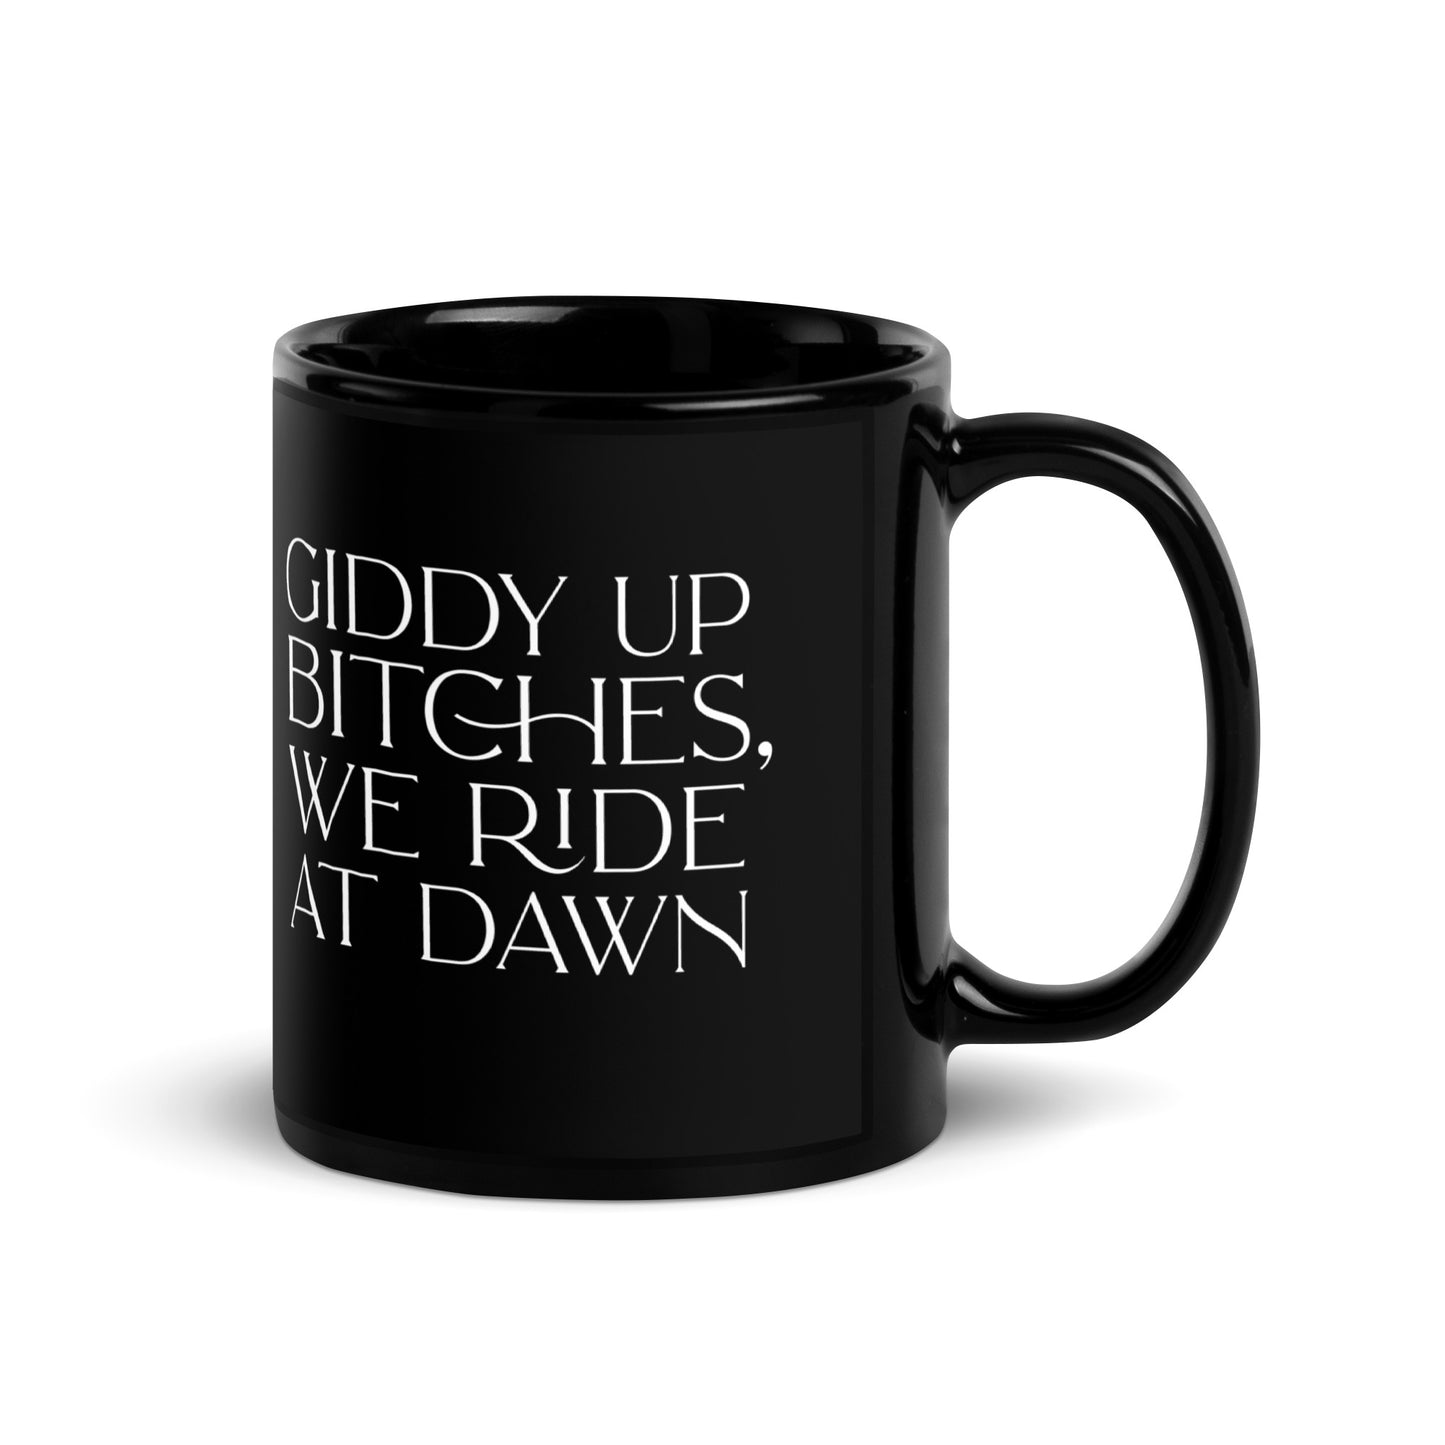 Giddy Up Bitches, We Ride at Dawn Mug